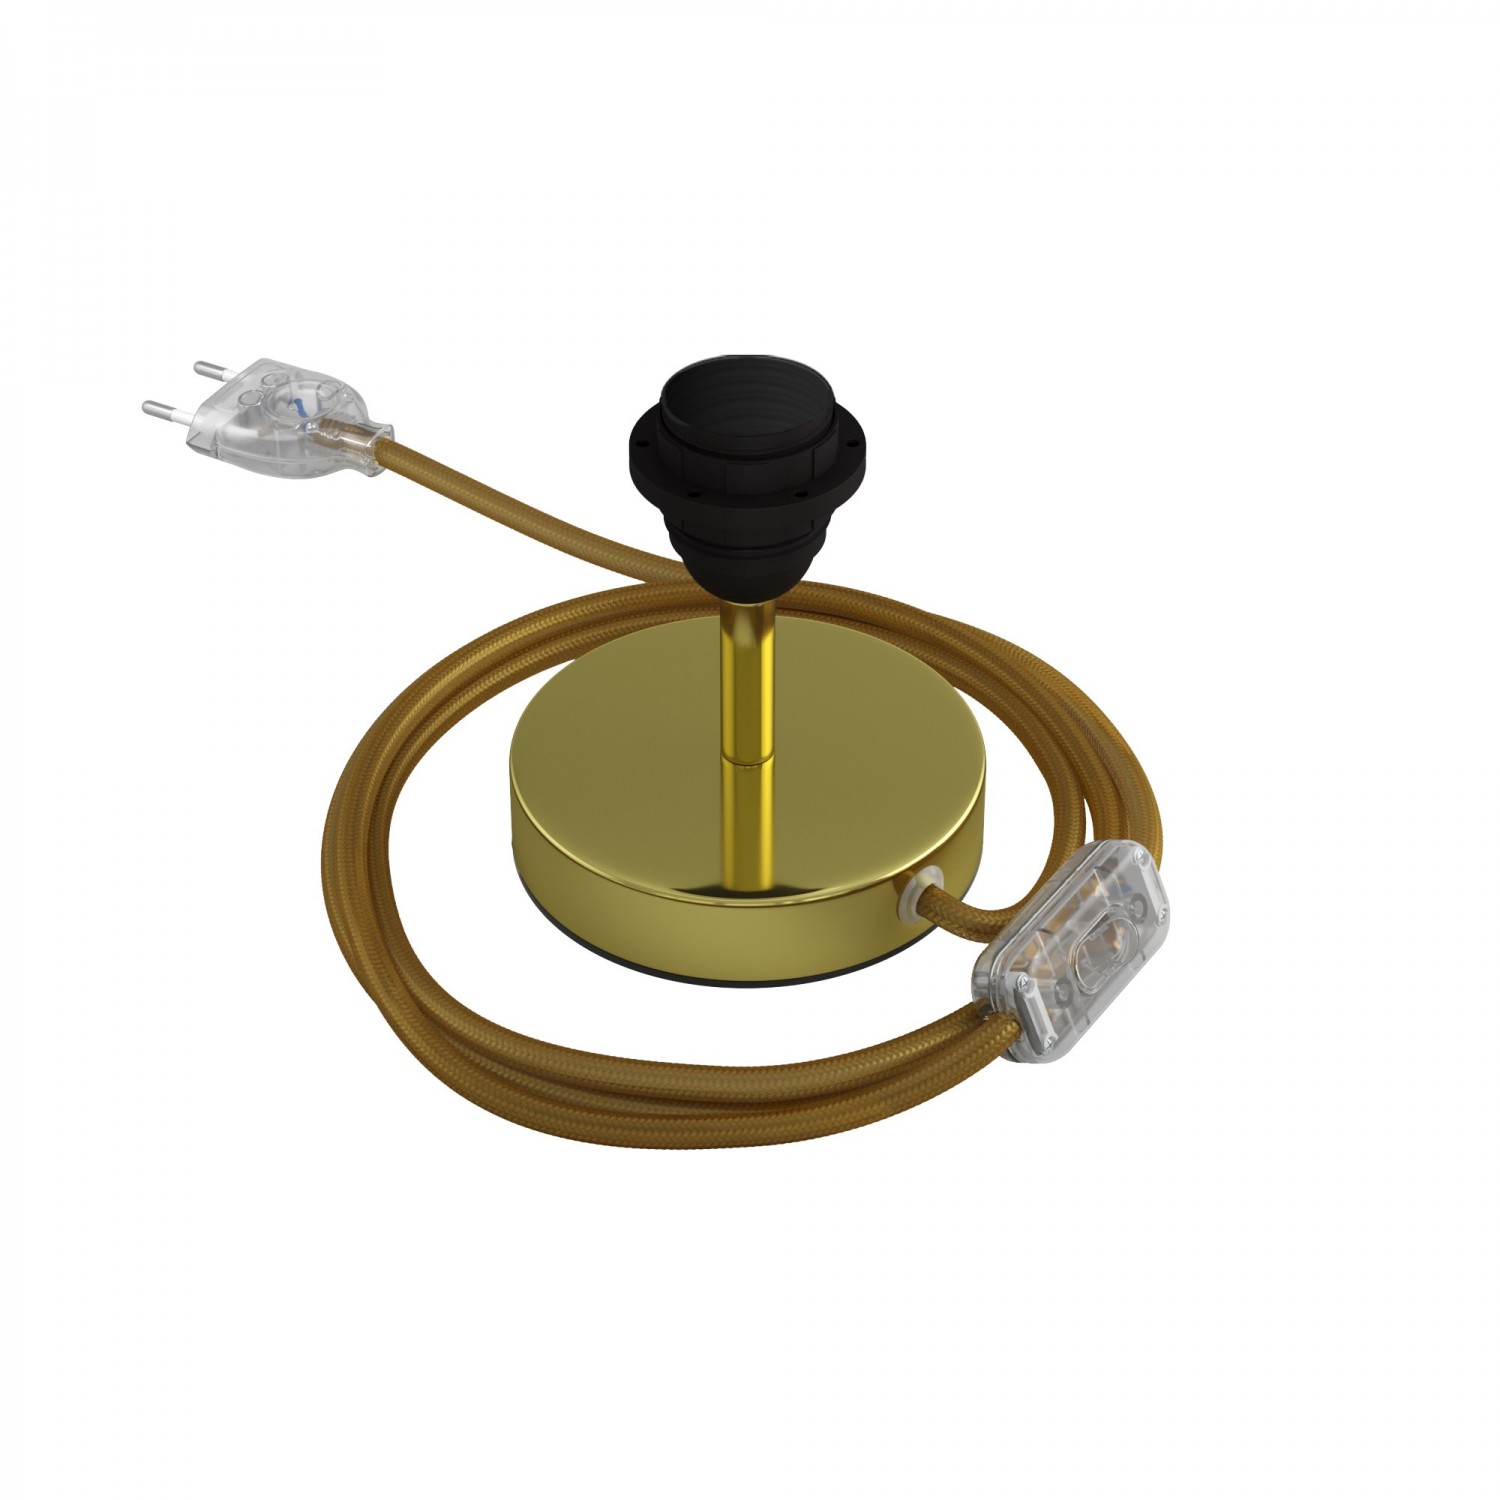 Alzaluce für Lampenschirm - Metall-Tischleuchte